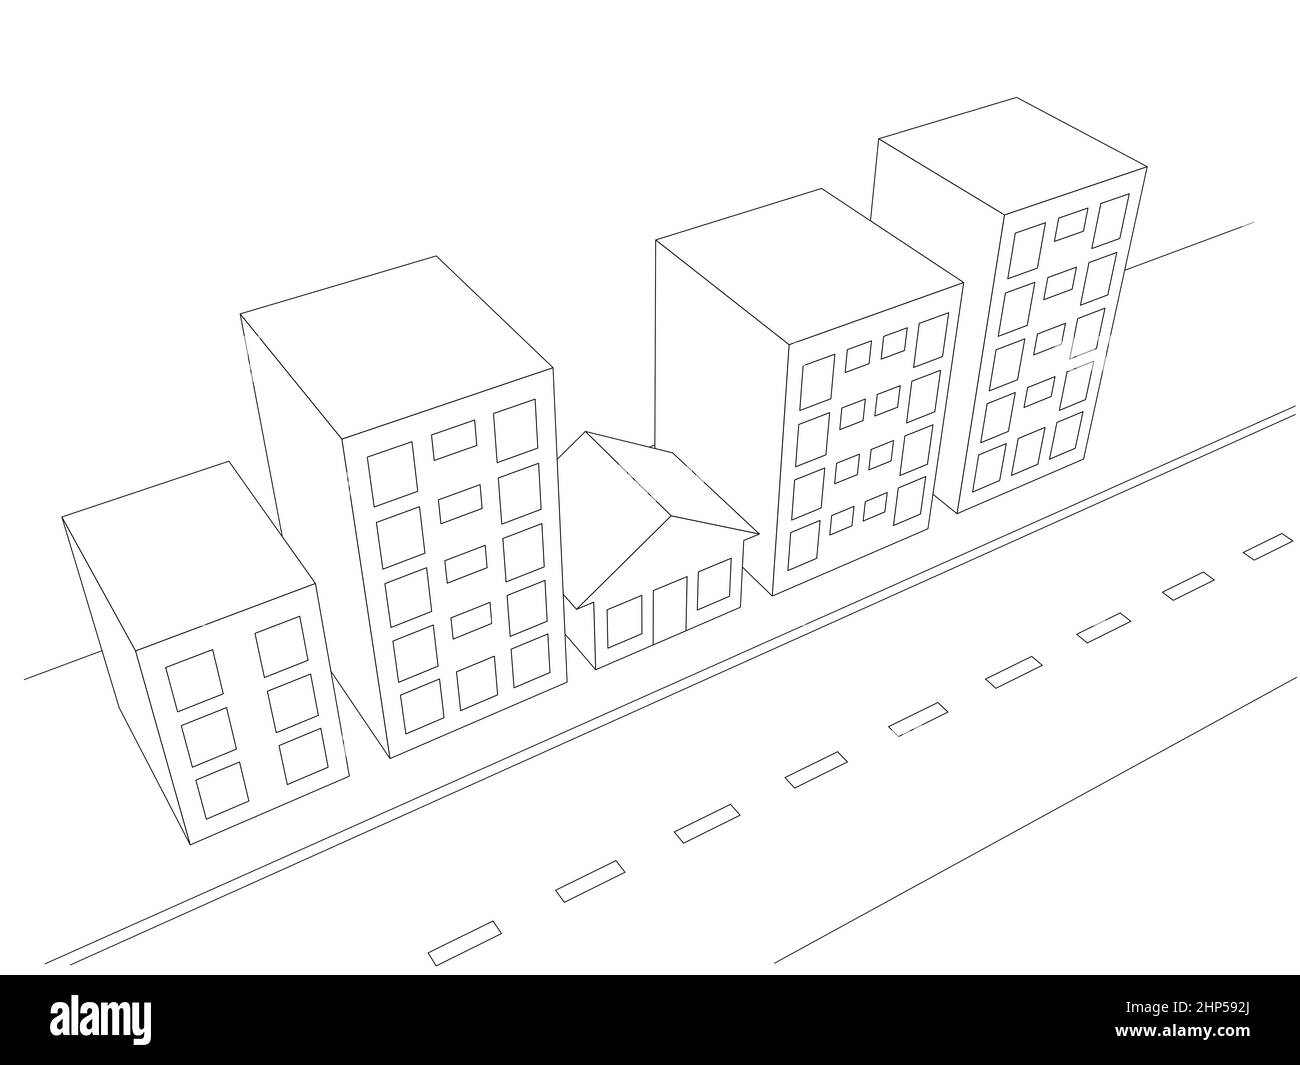 illustration simple des bâtiments de la ville et d'une petite maison en 3d. vue aérienne en perspective Banque D'Images